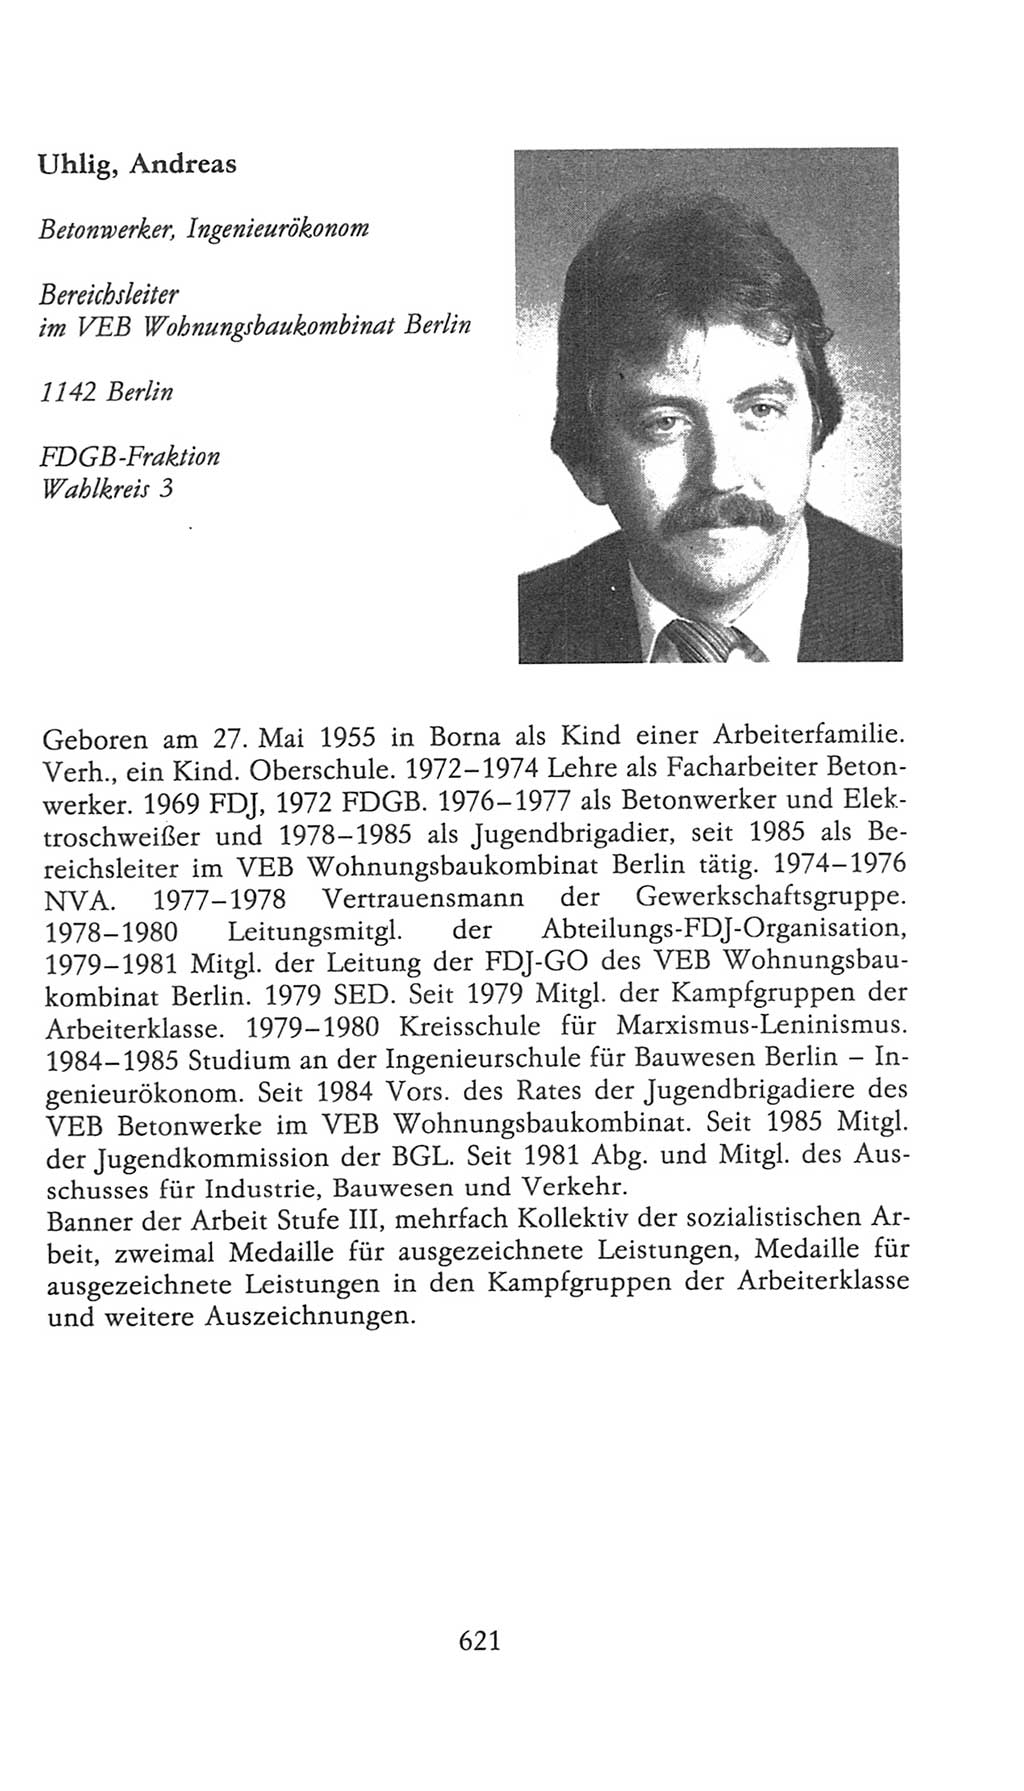 Volkskammer (VK) der Deutschen Demokratischen Republik (DDR), 9. Wahlperiode 1986-1990, Seite 621 (VK. DDR 9. WP. 1986-1990, S. 621)